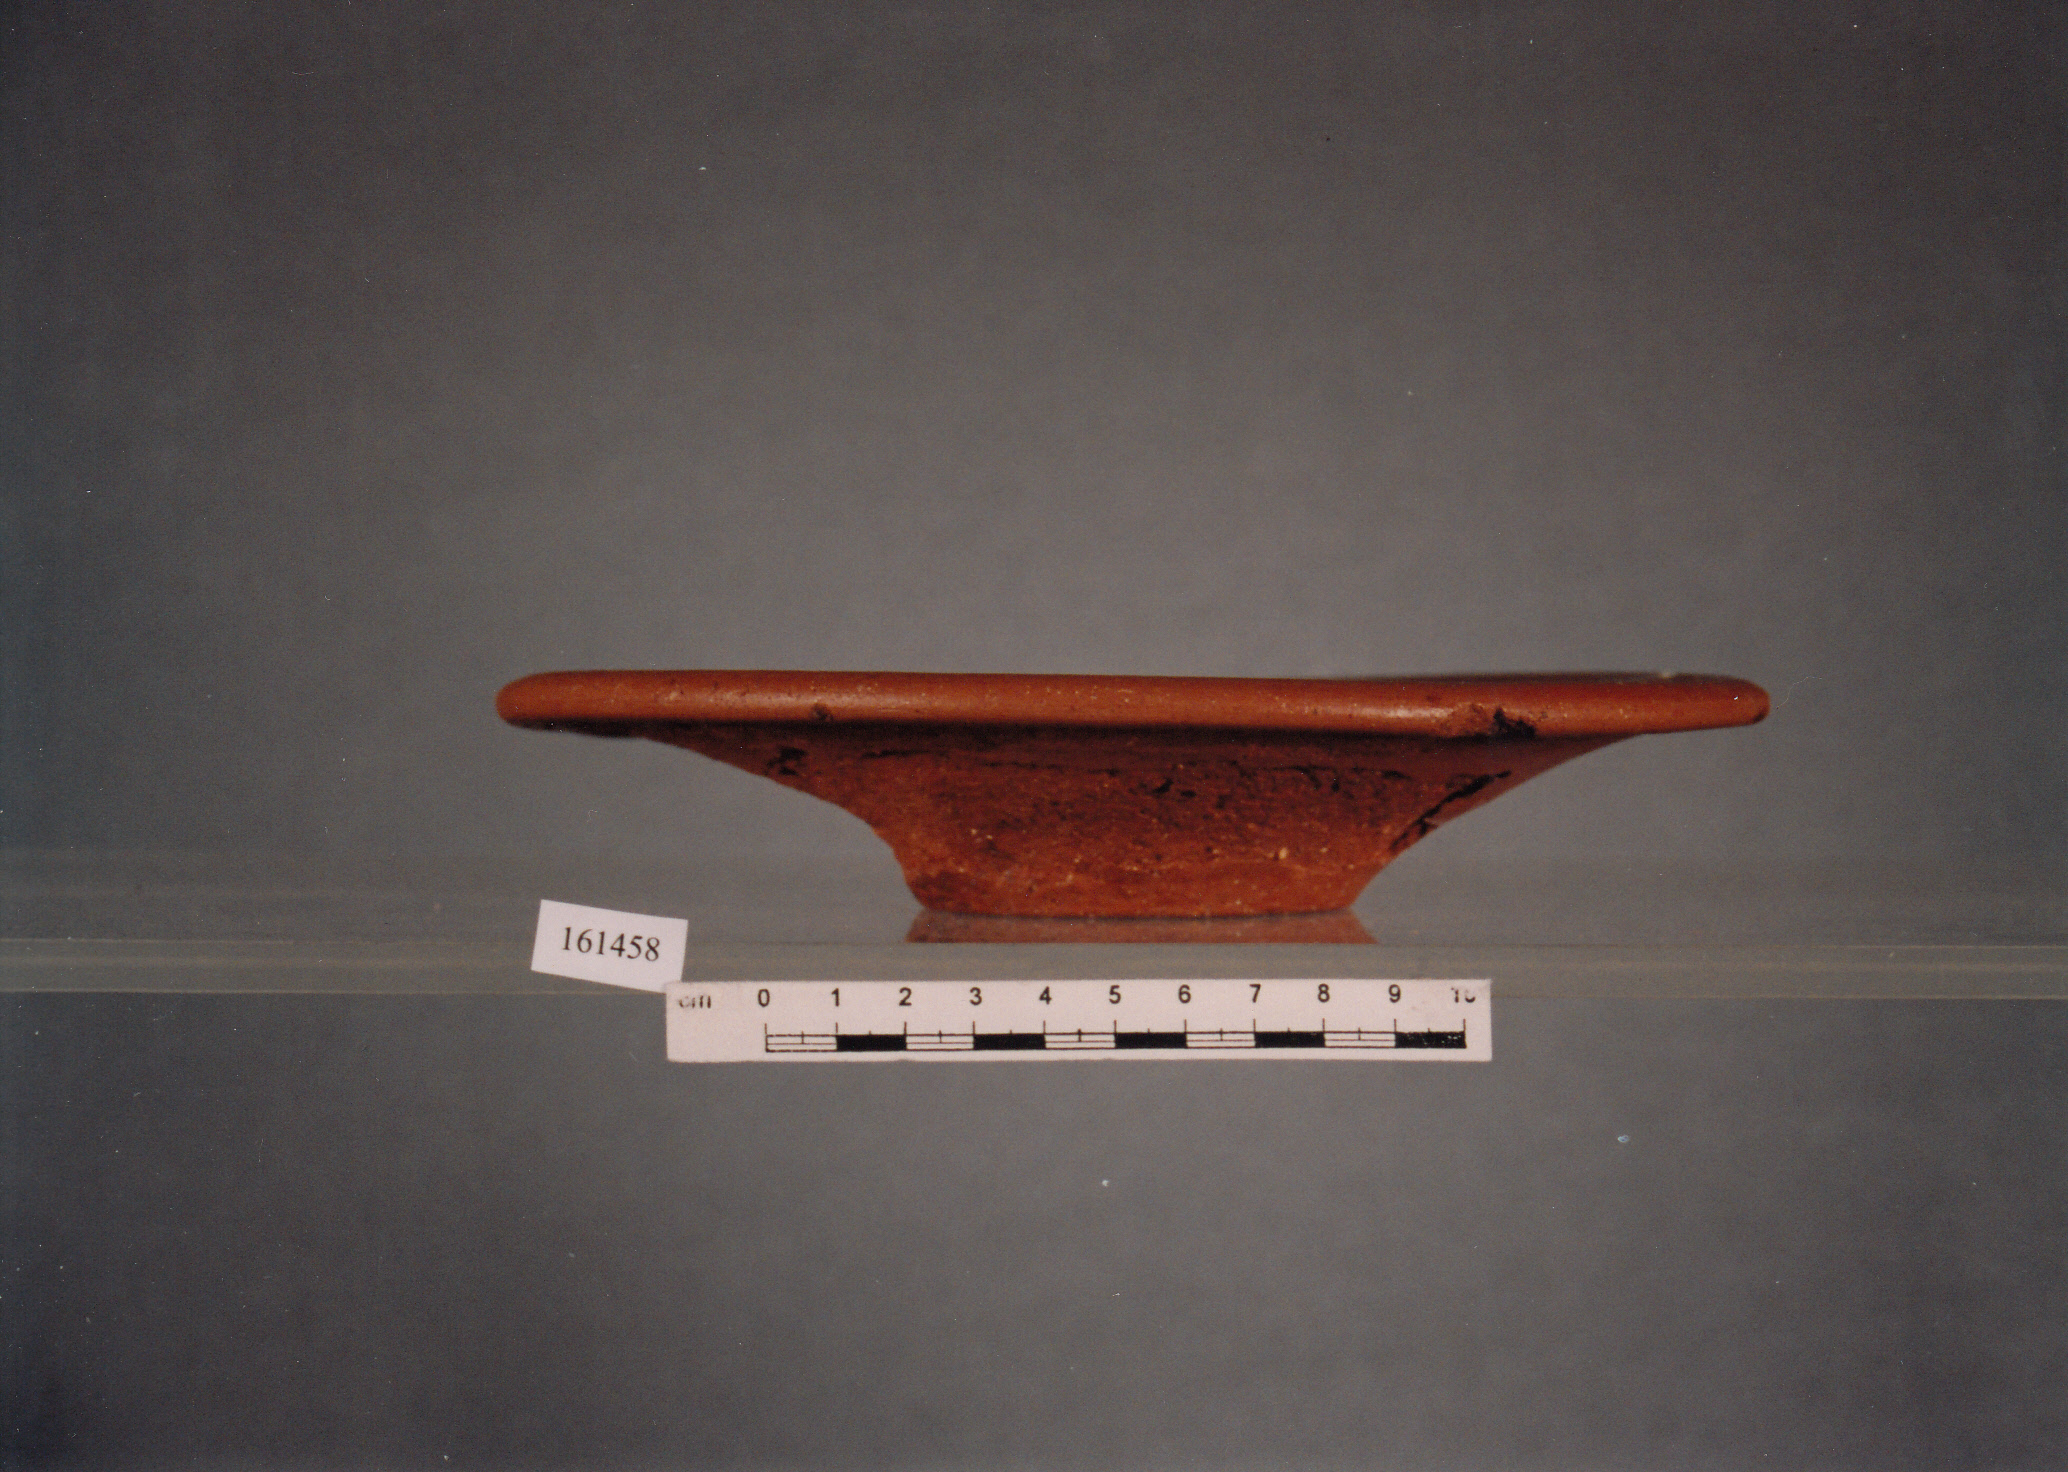 piatto, forma 1, piatto ombelicato - civiltà fenicia (VI sec. a.C)